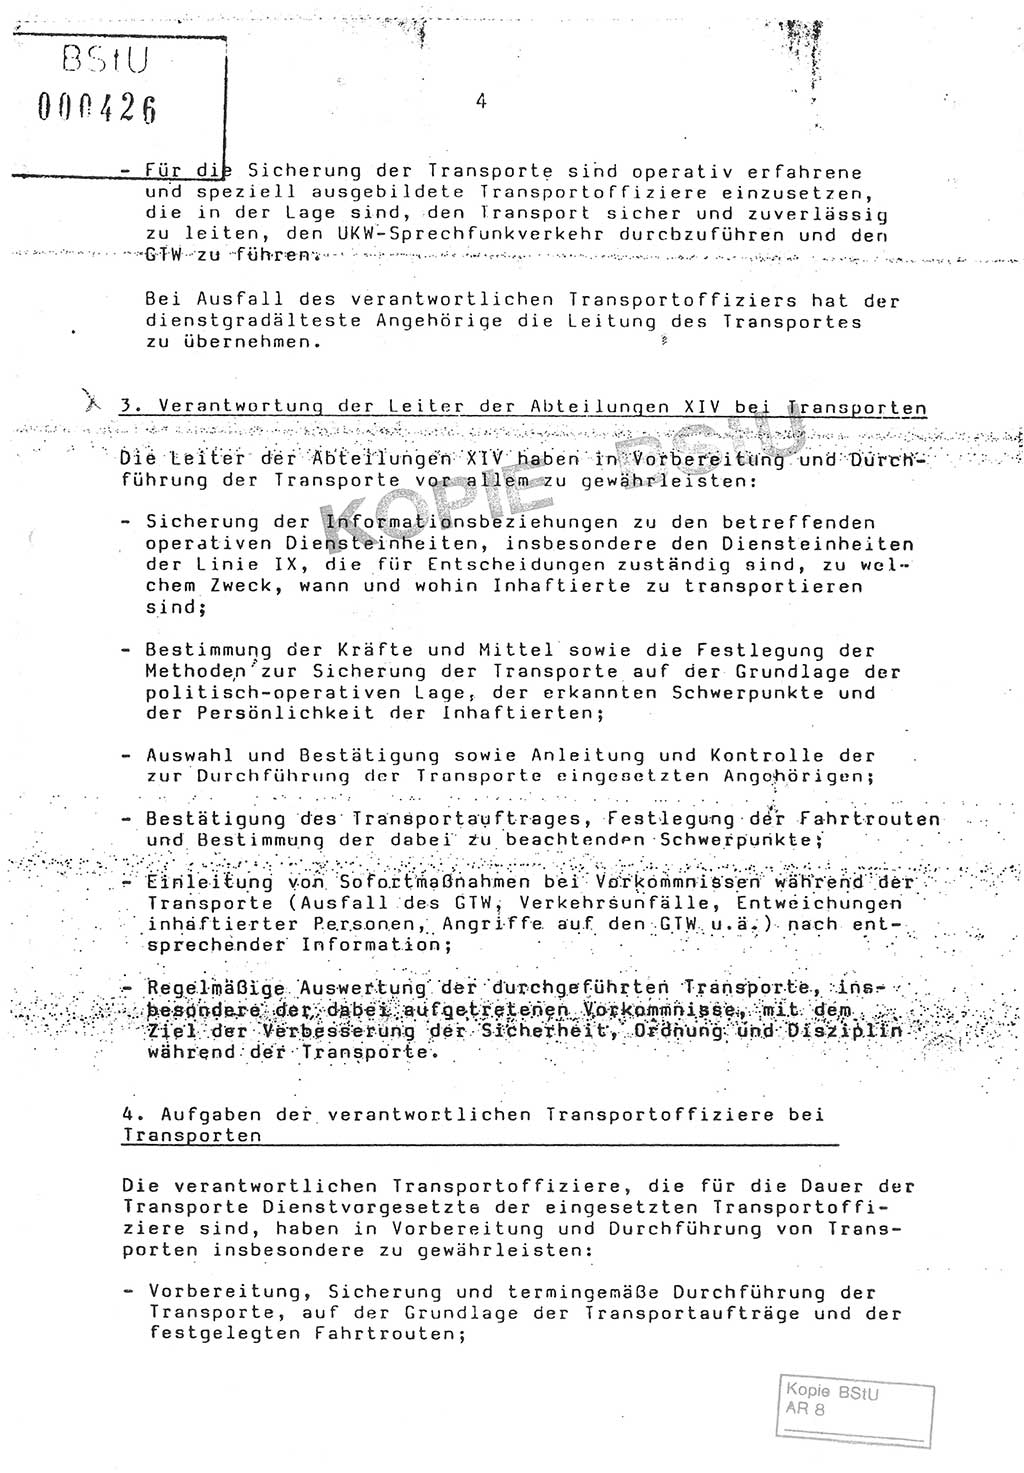 Anweisung Nr. 4/86 zur Sicherung der Transporte Inhaftierter durch Angehörige der Abteilungen ⅩⅣ, Transportsicherungsanweisung, Ministerium für Staatssicherheit (MfS) [Deutsche Demokratische Republik (DDR)], Abteilung ⅩⅣ, Leiter, Vertrauliche Verschlußsache (VVS) o008-18/86, Berlin, 29.1.1986, Seite 4 (Anw. 4/86 MfS DDR Abt. ⅩⅣ Ltr. VVS o008-18/86 1986, S. 4)